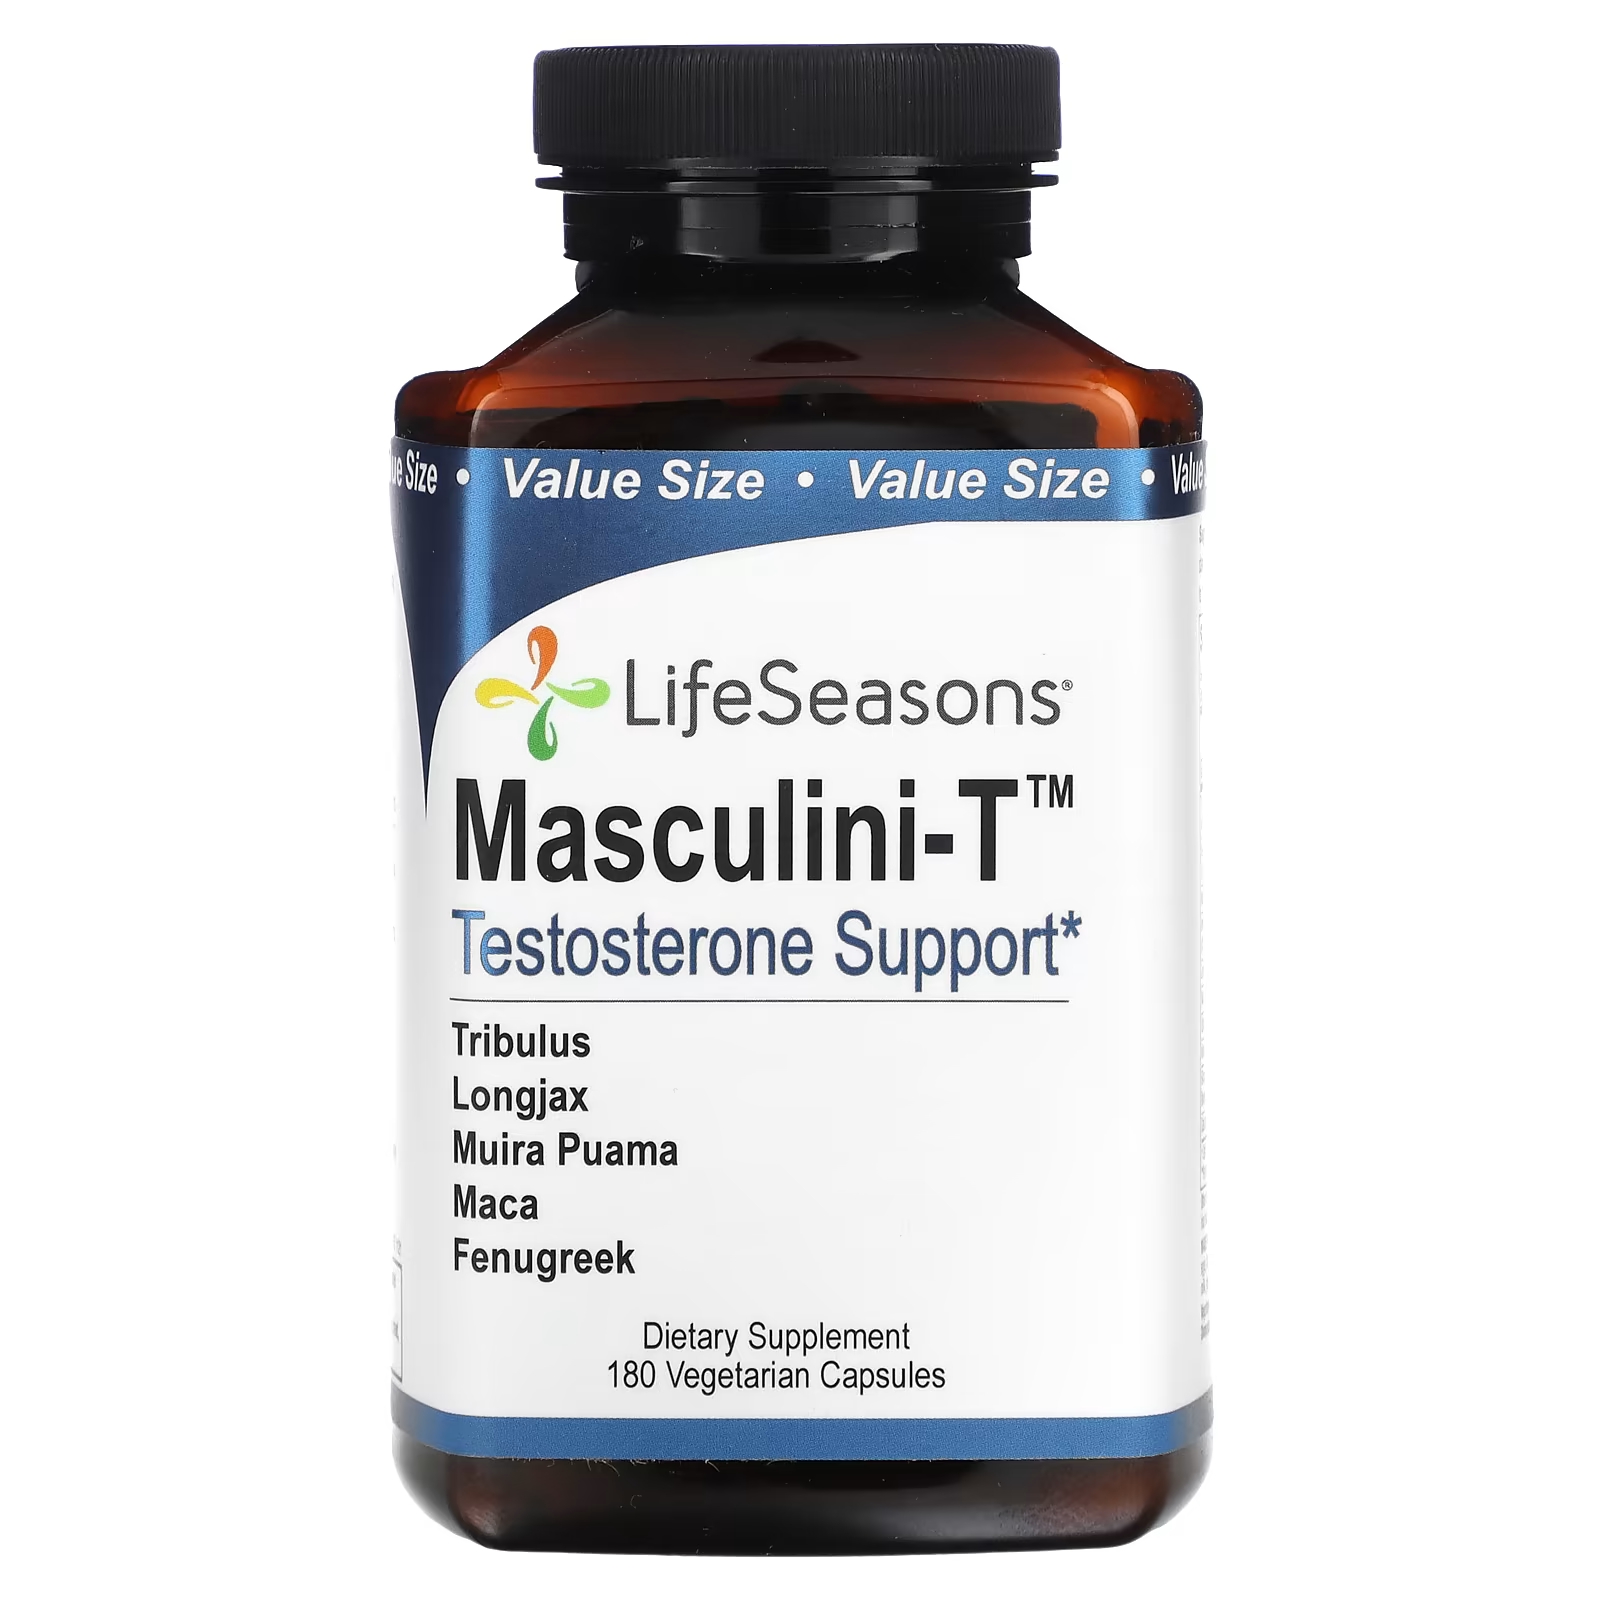 Пищевая добавка LifeSeasons Masculini-T, 180 капсул пищевая добавка lifeseasons nitro t для мужчин 90 капсул